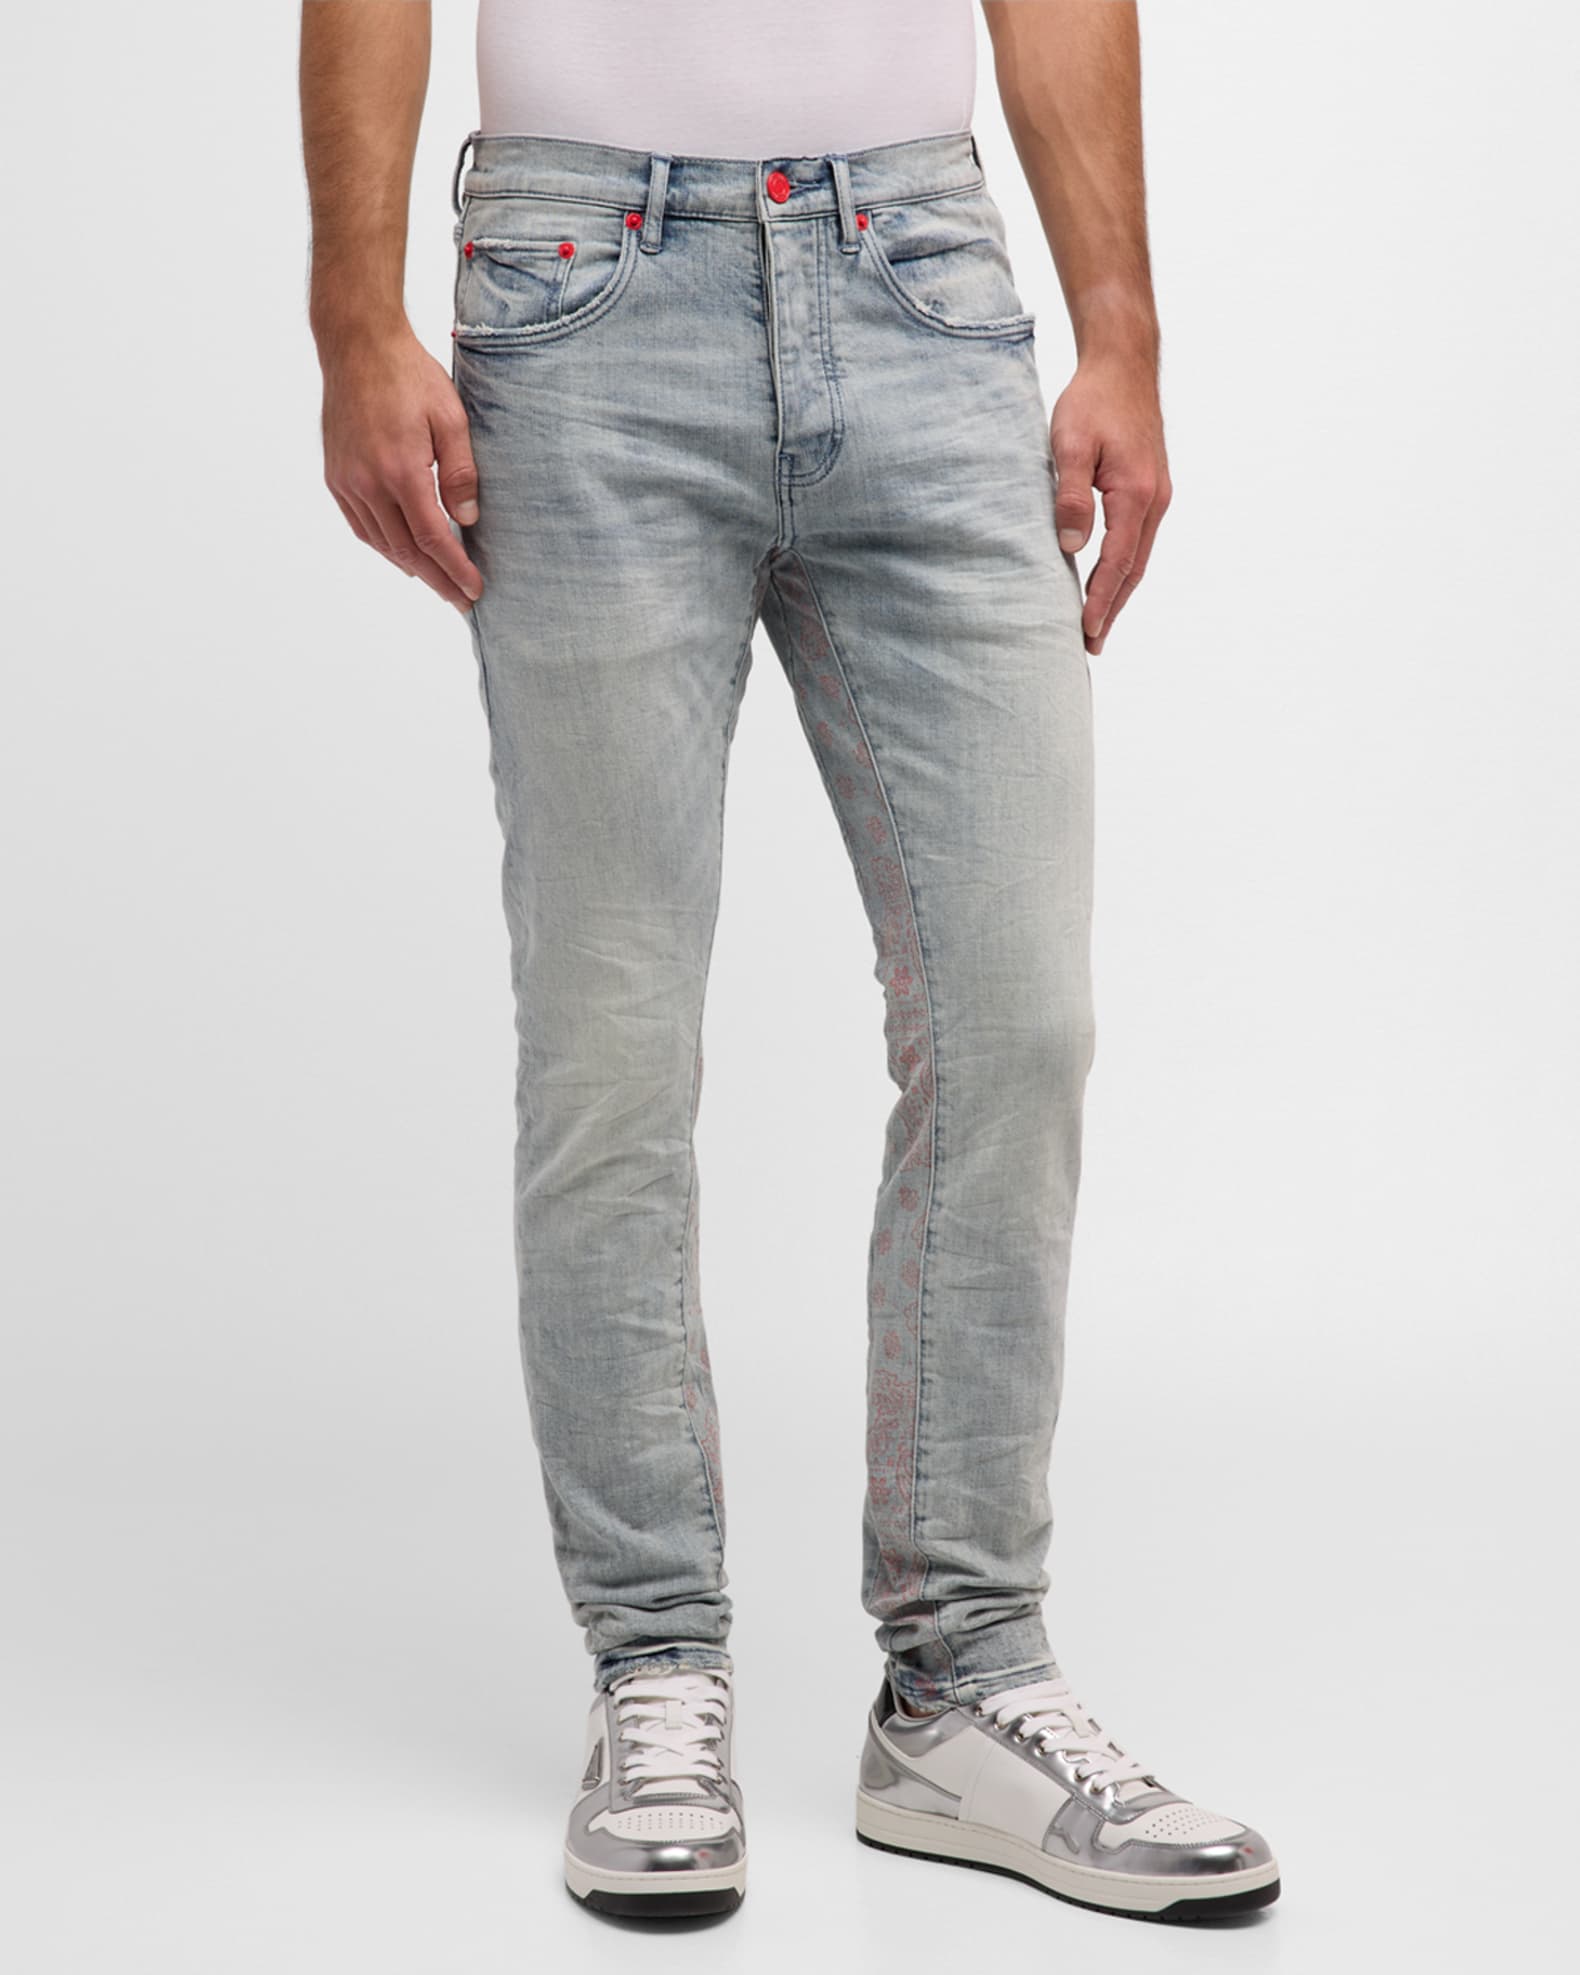 Louis Vuitton Indigo Dark Wash Denim Skinny Jeans S